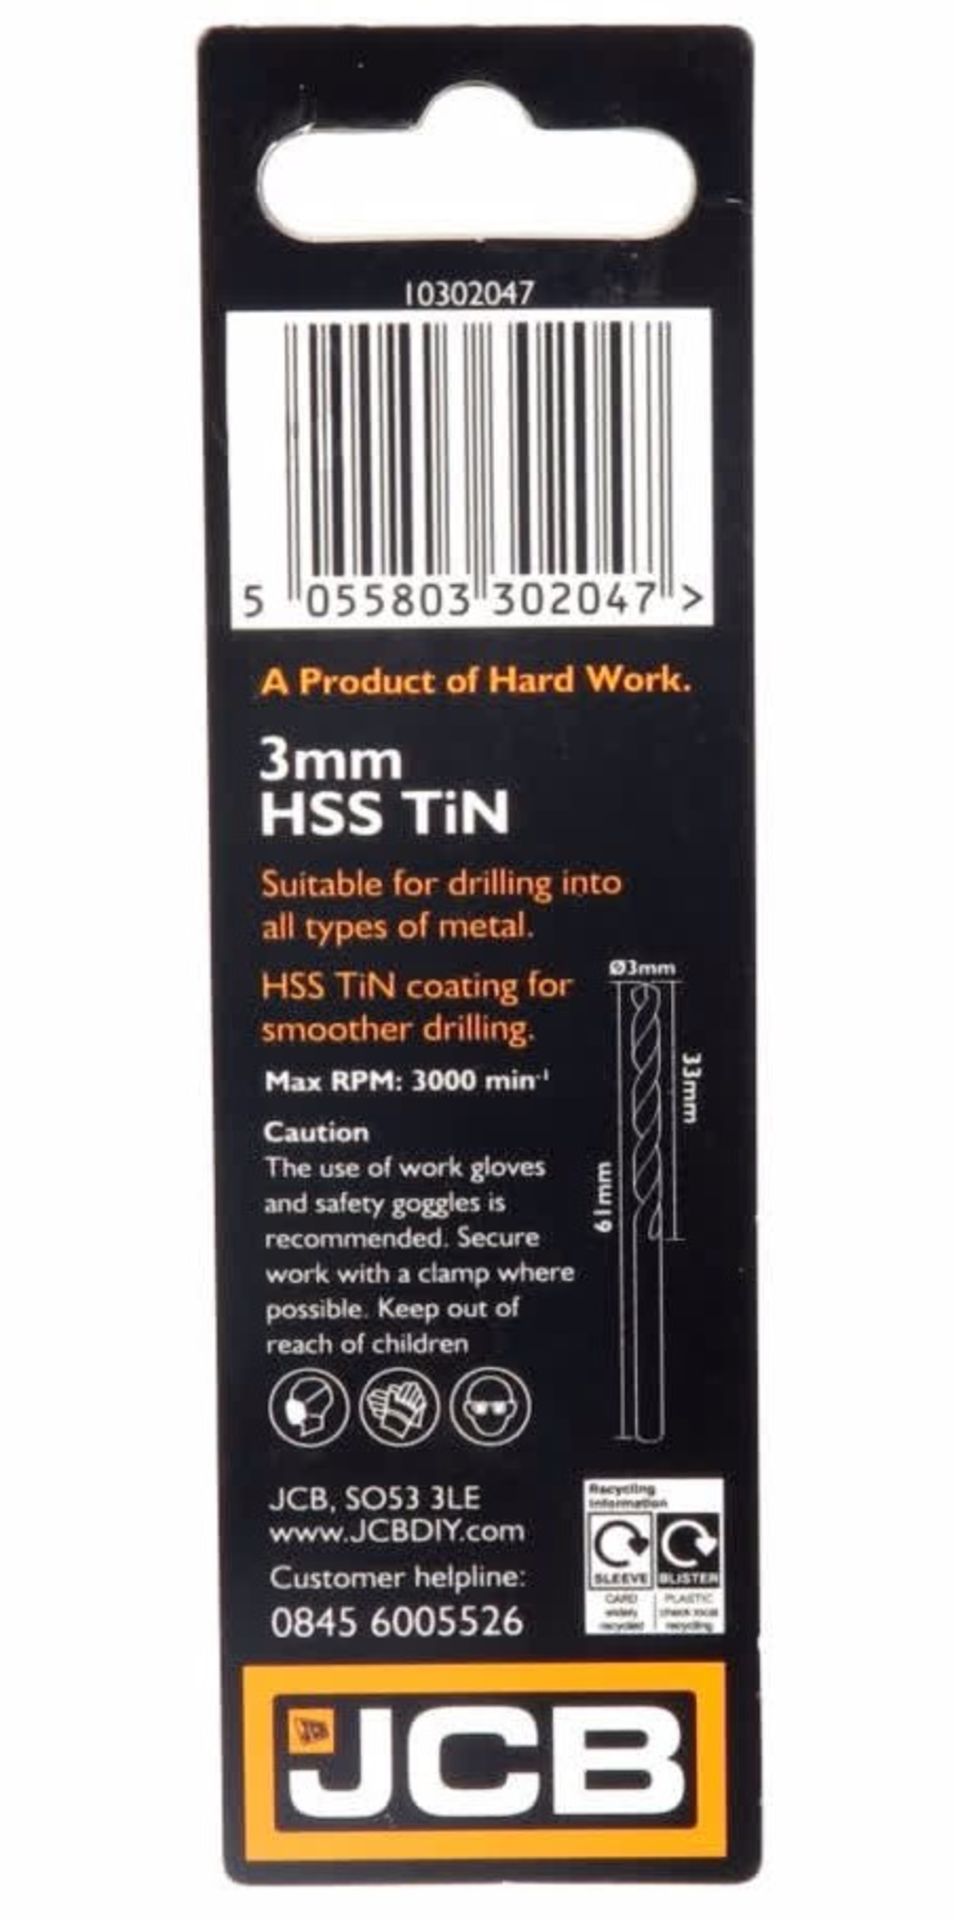 RRP £57.40 10 x PRECISION GRND HSS TIN 3mm RRP £57.40 (£5.47ea) 10 No HSS TIN Drill Bits Length 61m - Image 2 of 3